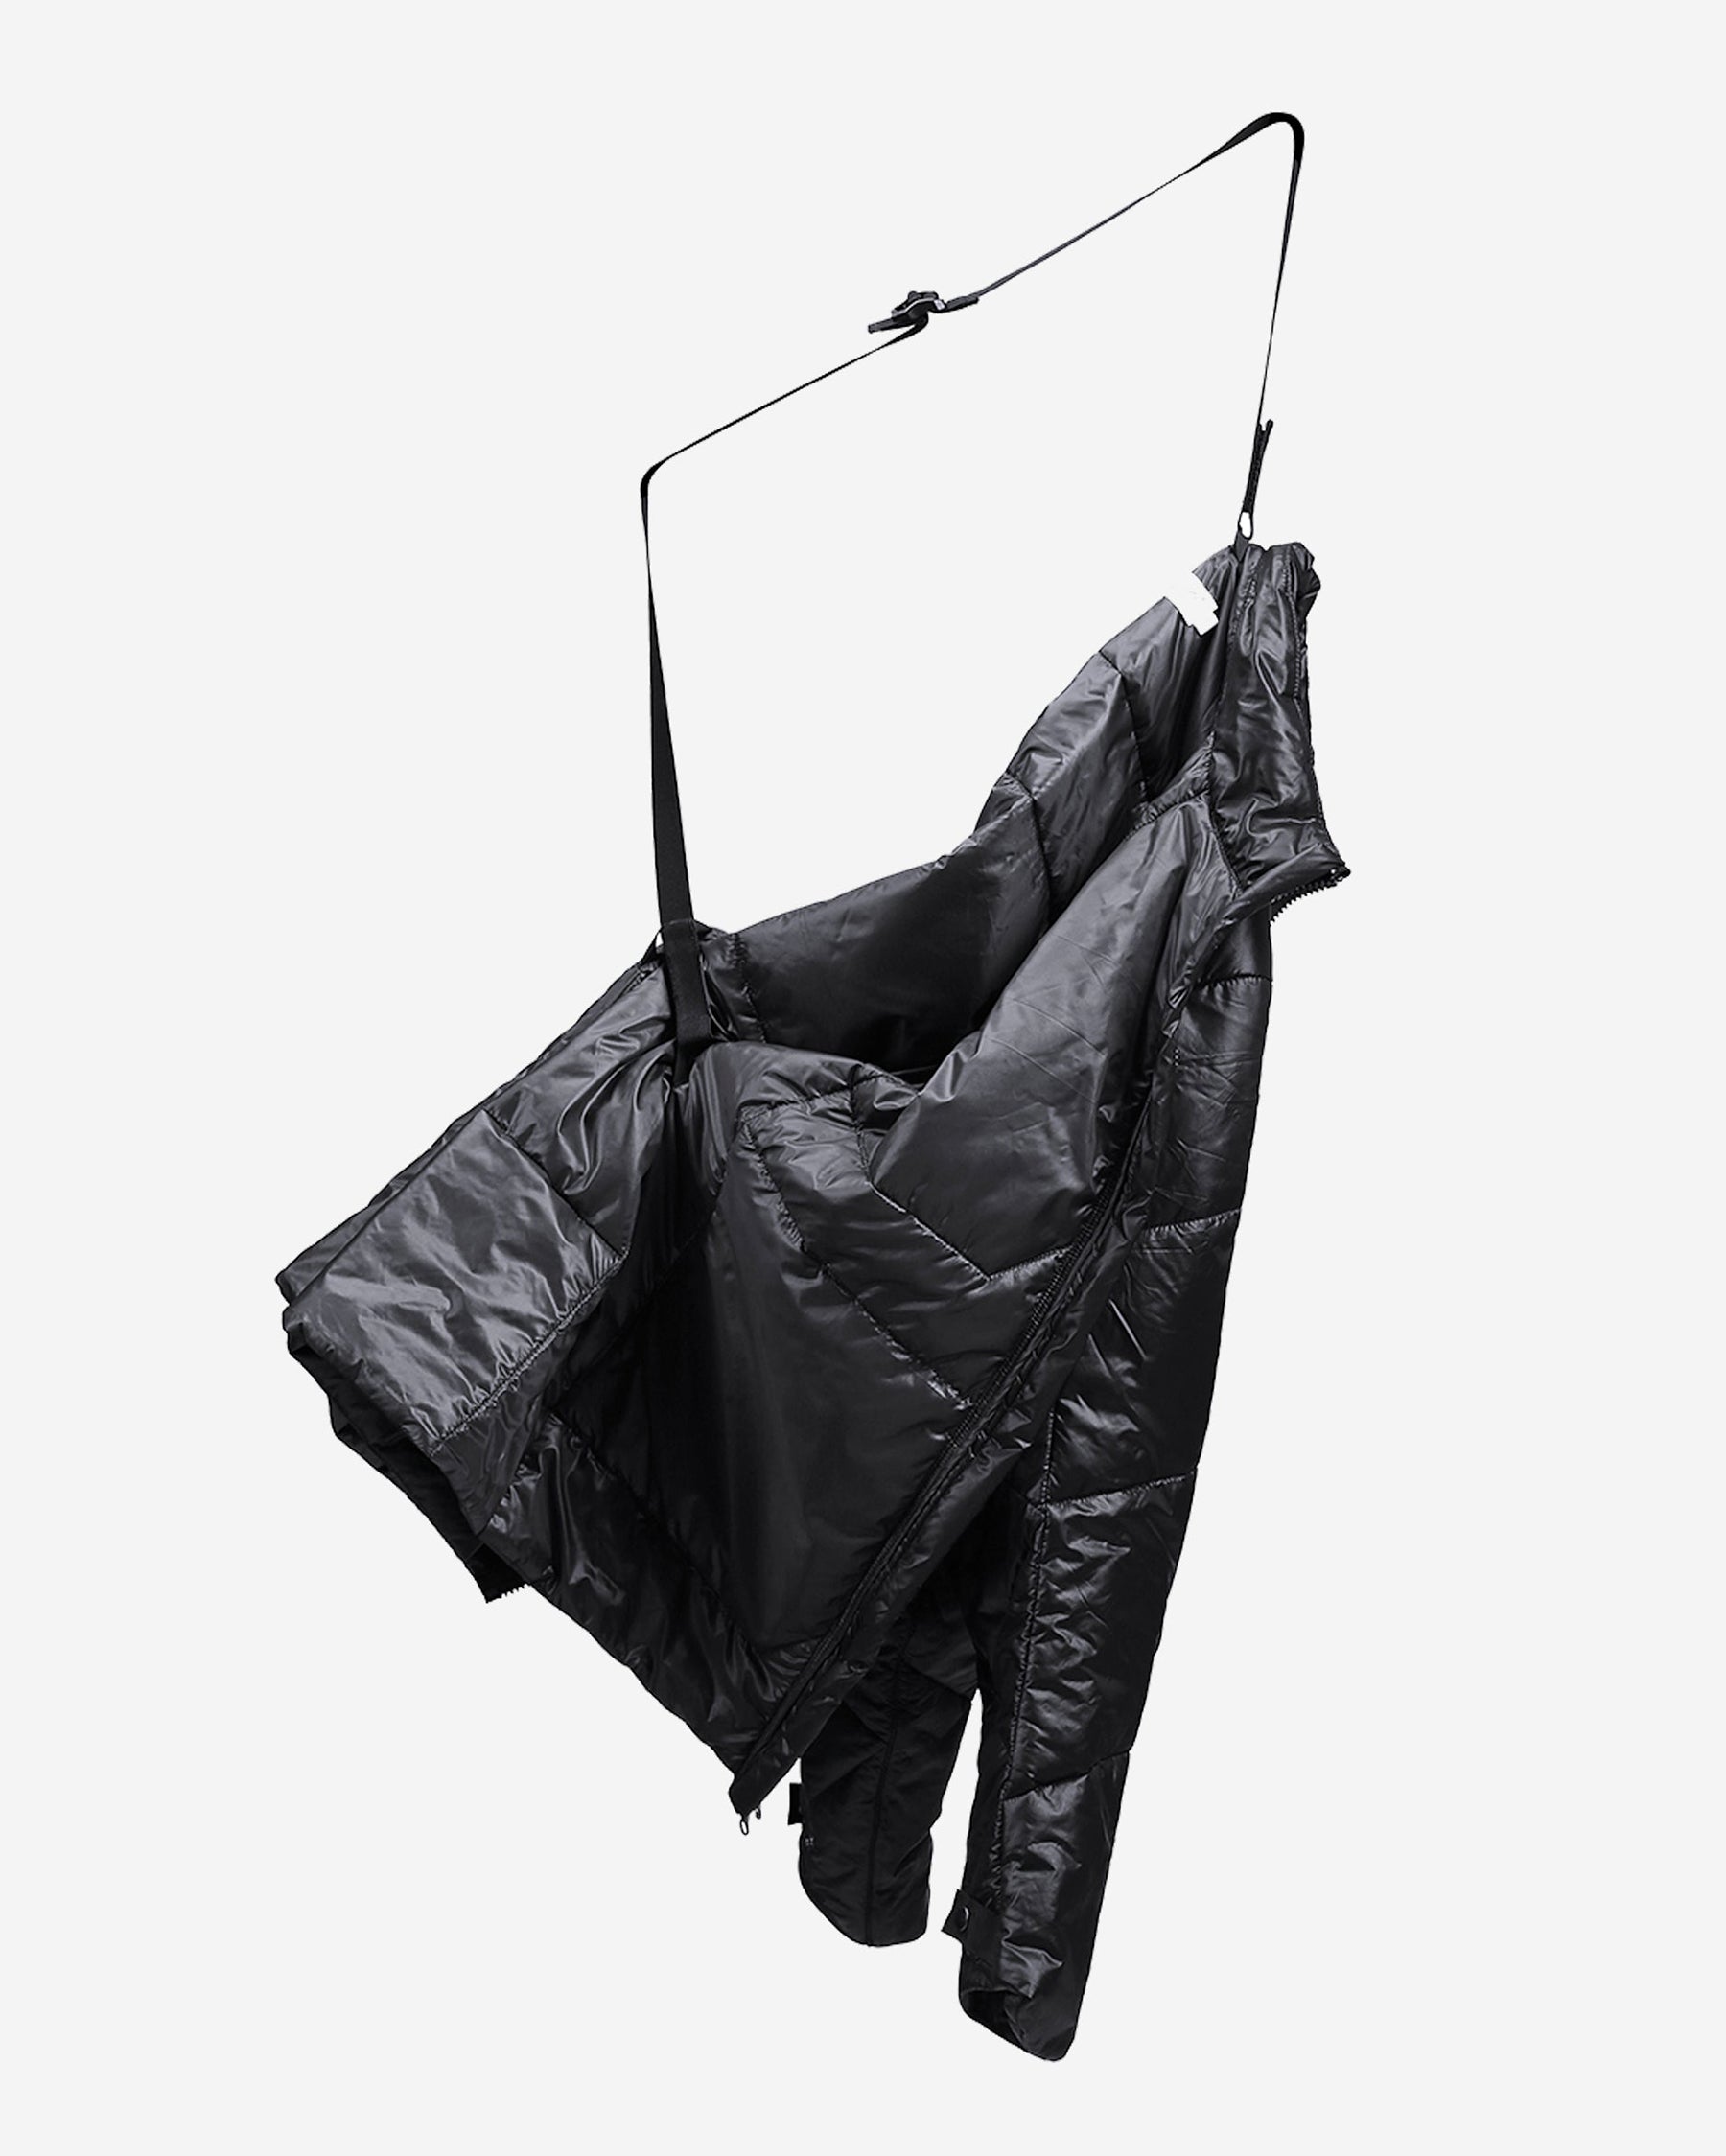 137 Insulation Jacket Black | UNIDEN® LLC.